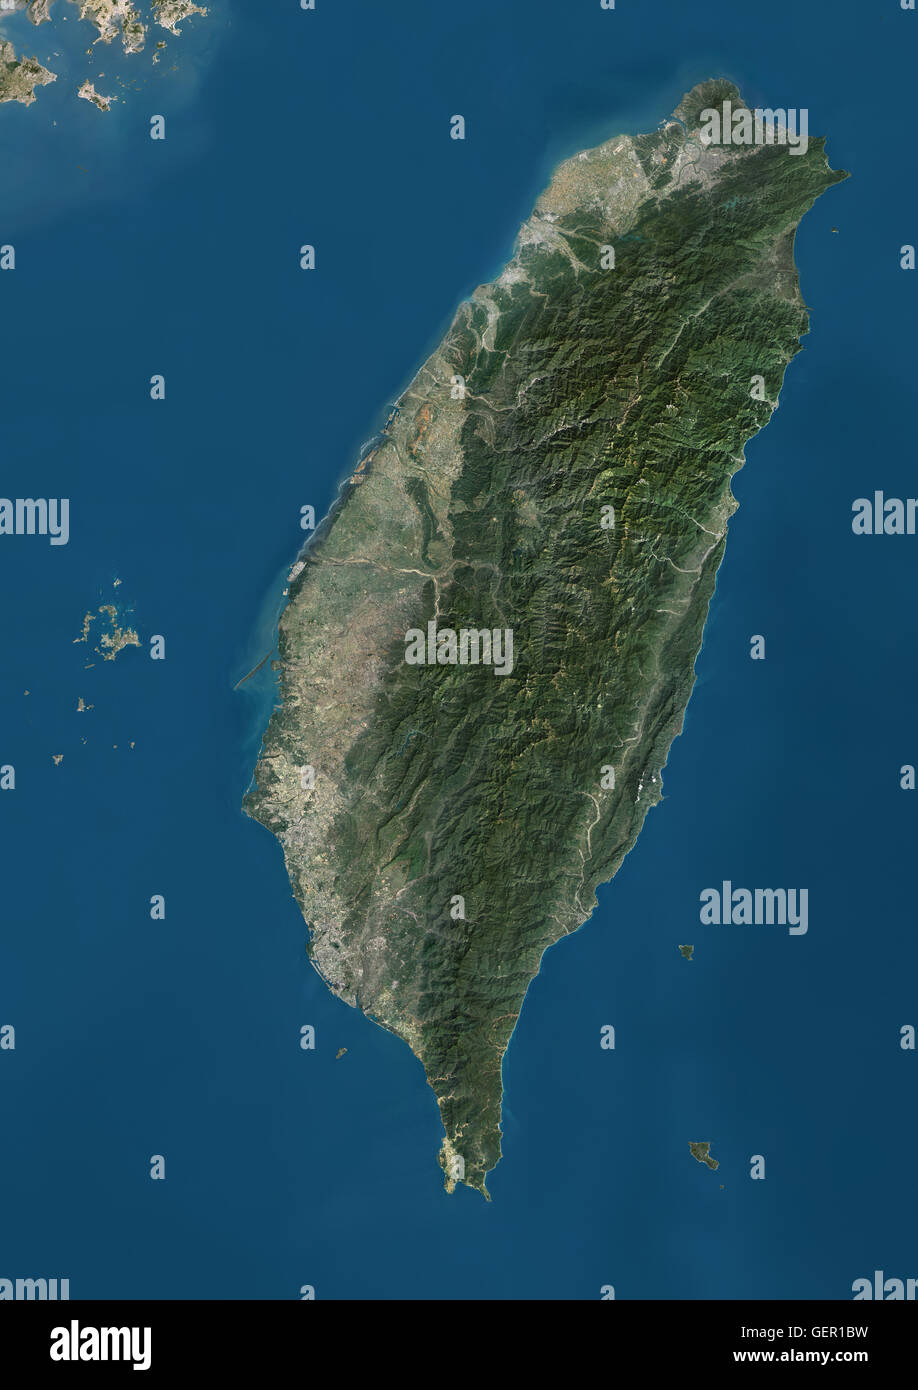 Satellitenansicht von Taiwan. Dieses Bild wurde aus Daten von Landsat-Satelliten erworben erstellt. Stockfoto